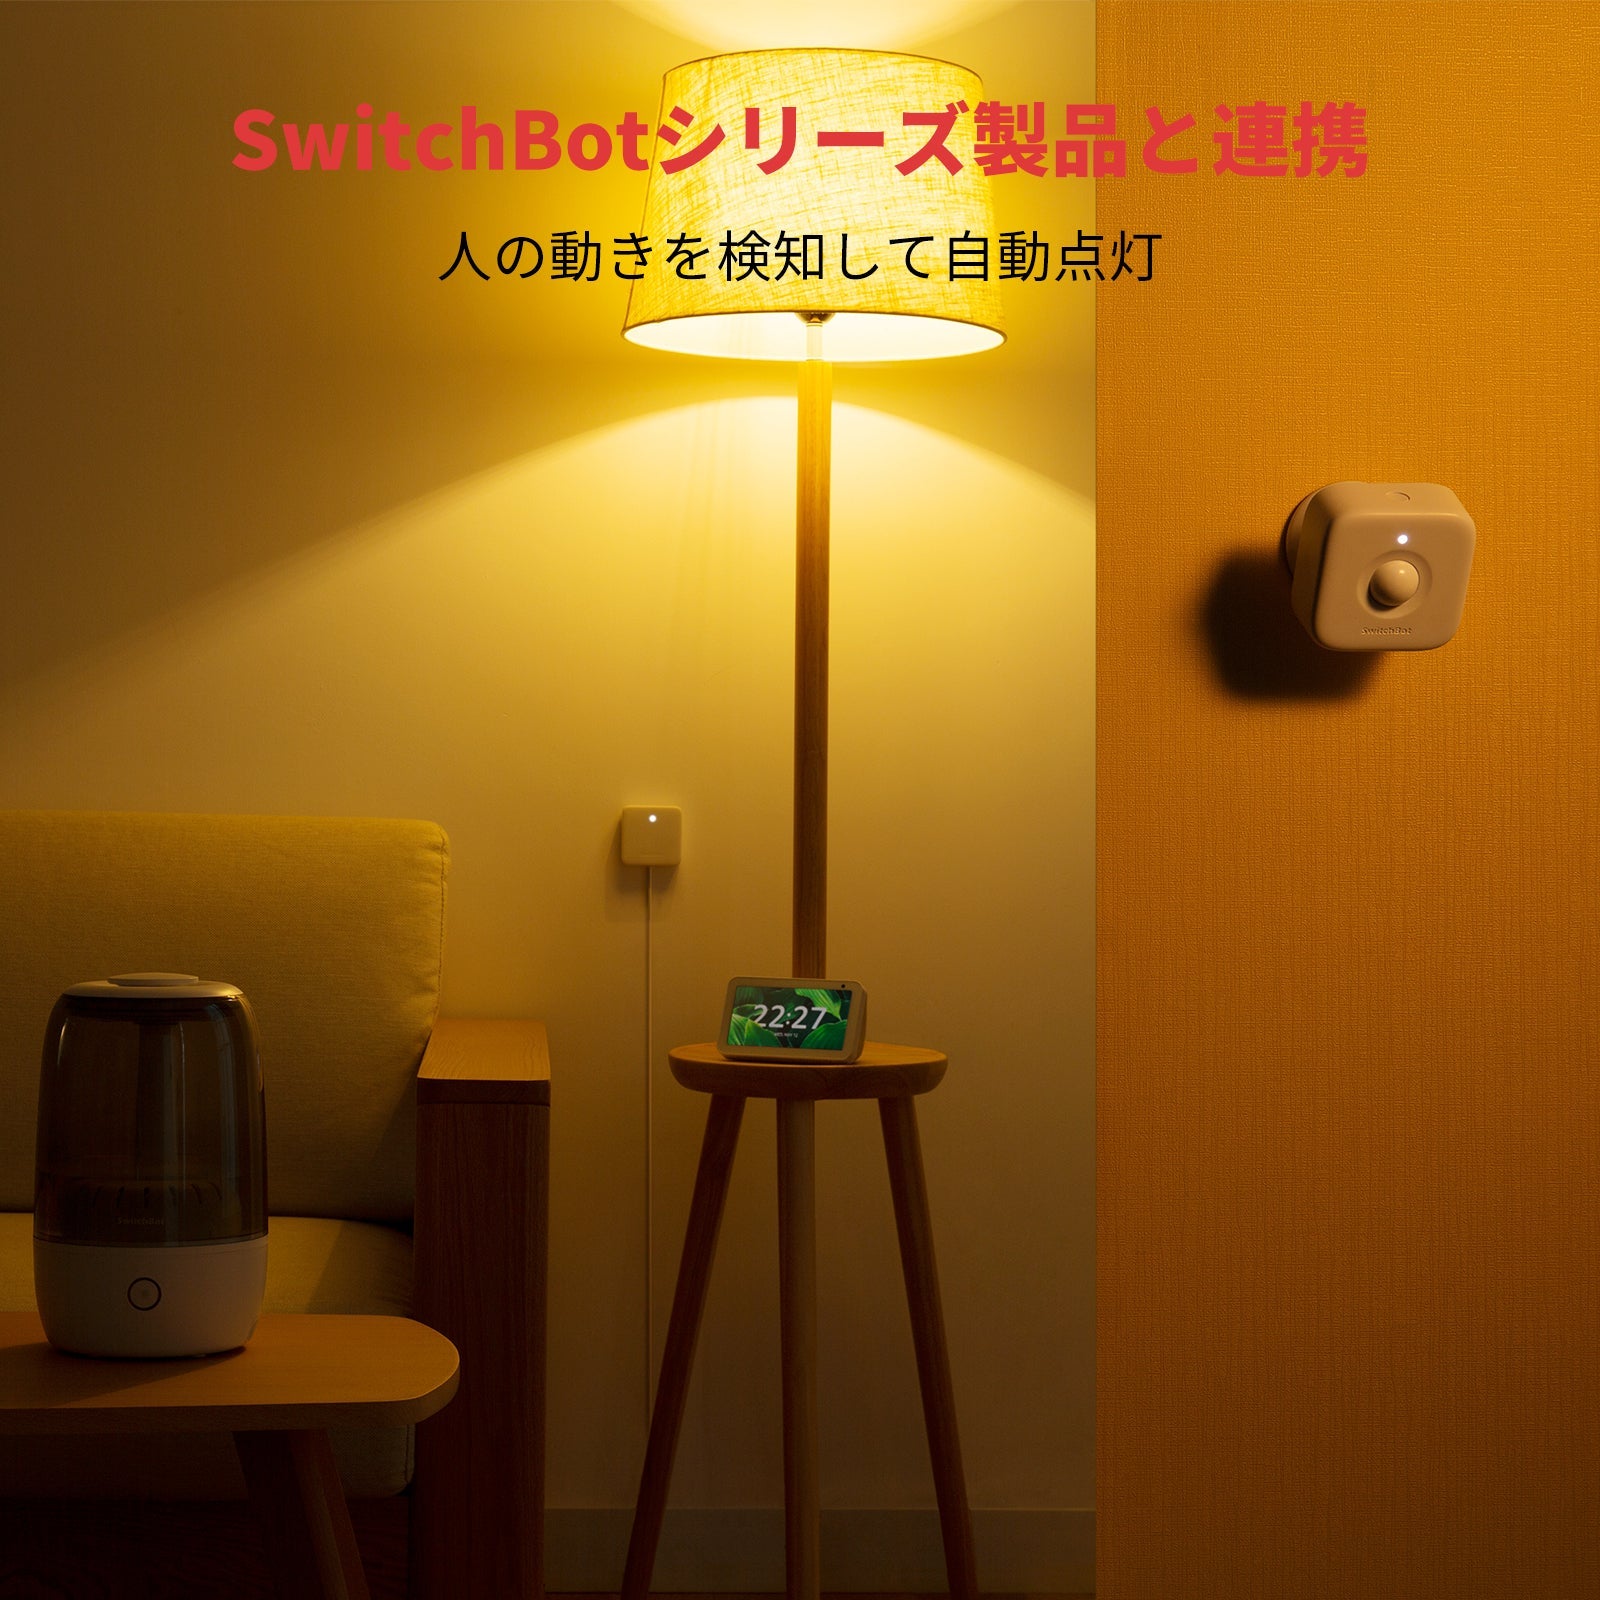 SwitchBot人感センサー SwitchBot（スイッチボット） 